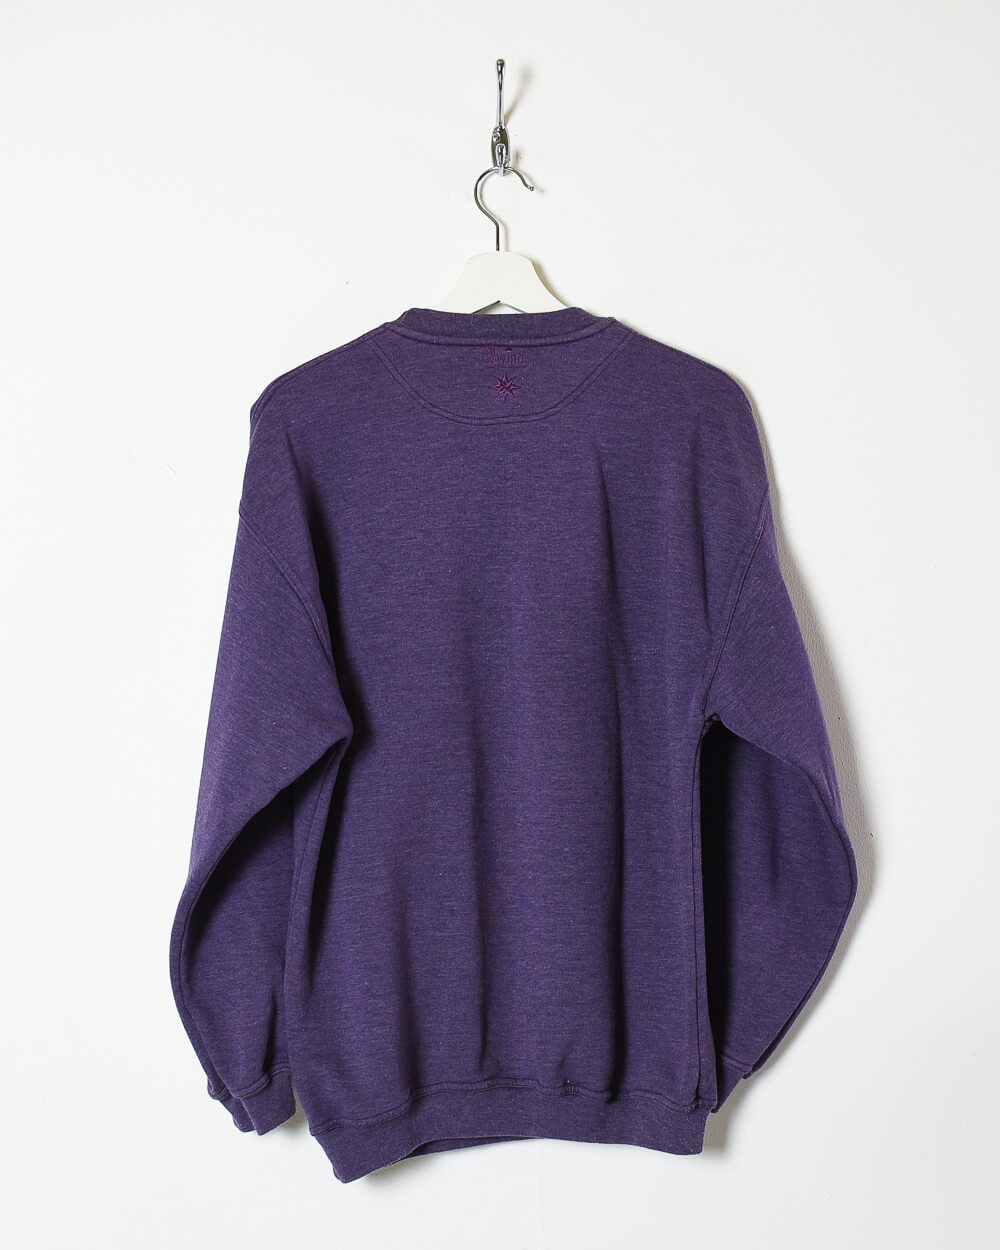 Purple Wind International Basic Team Sweatshirt - Medium